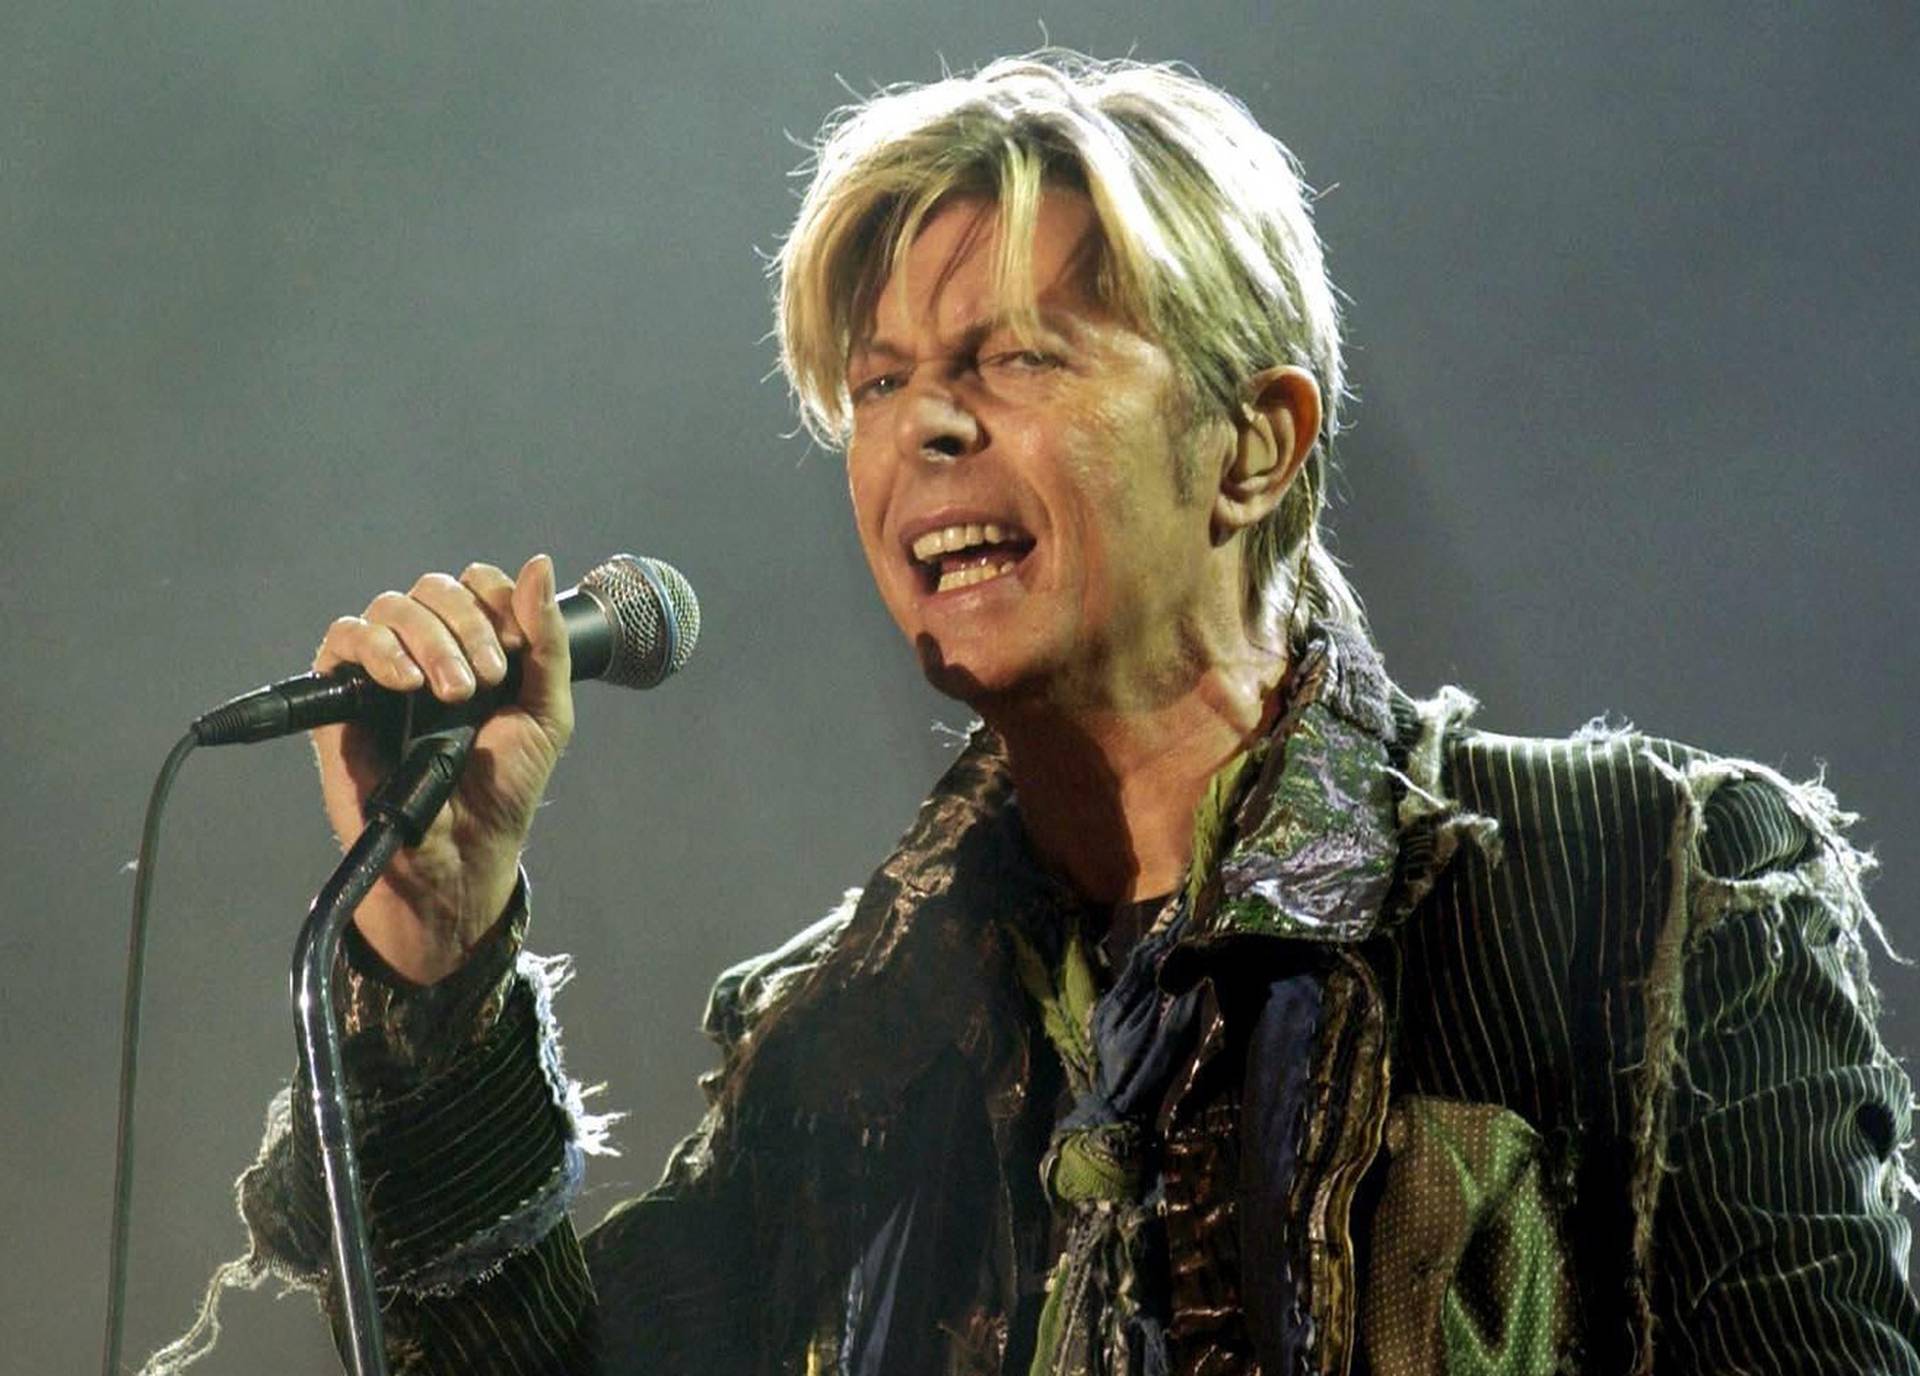 David Bowie auction